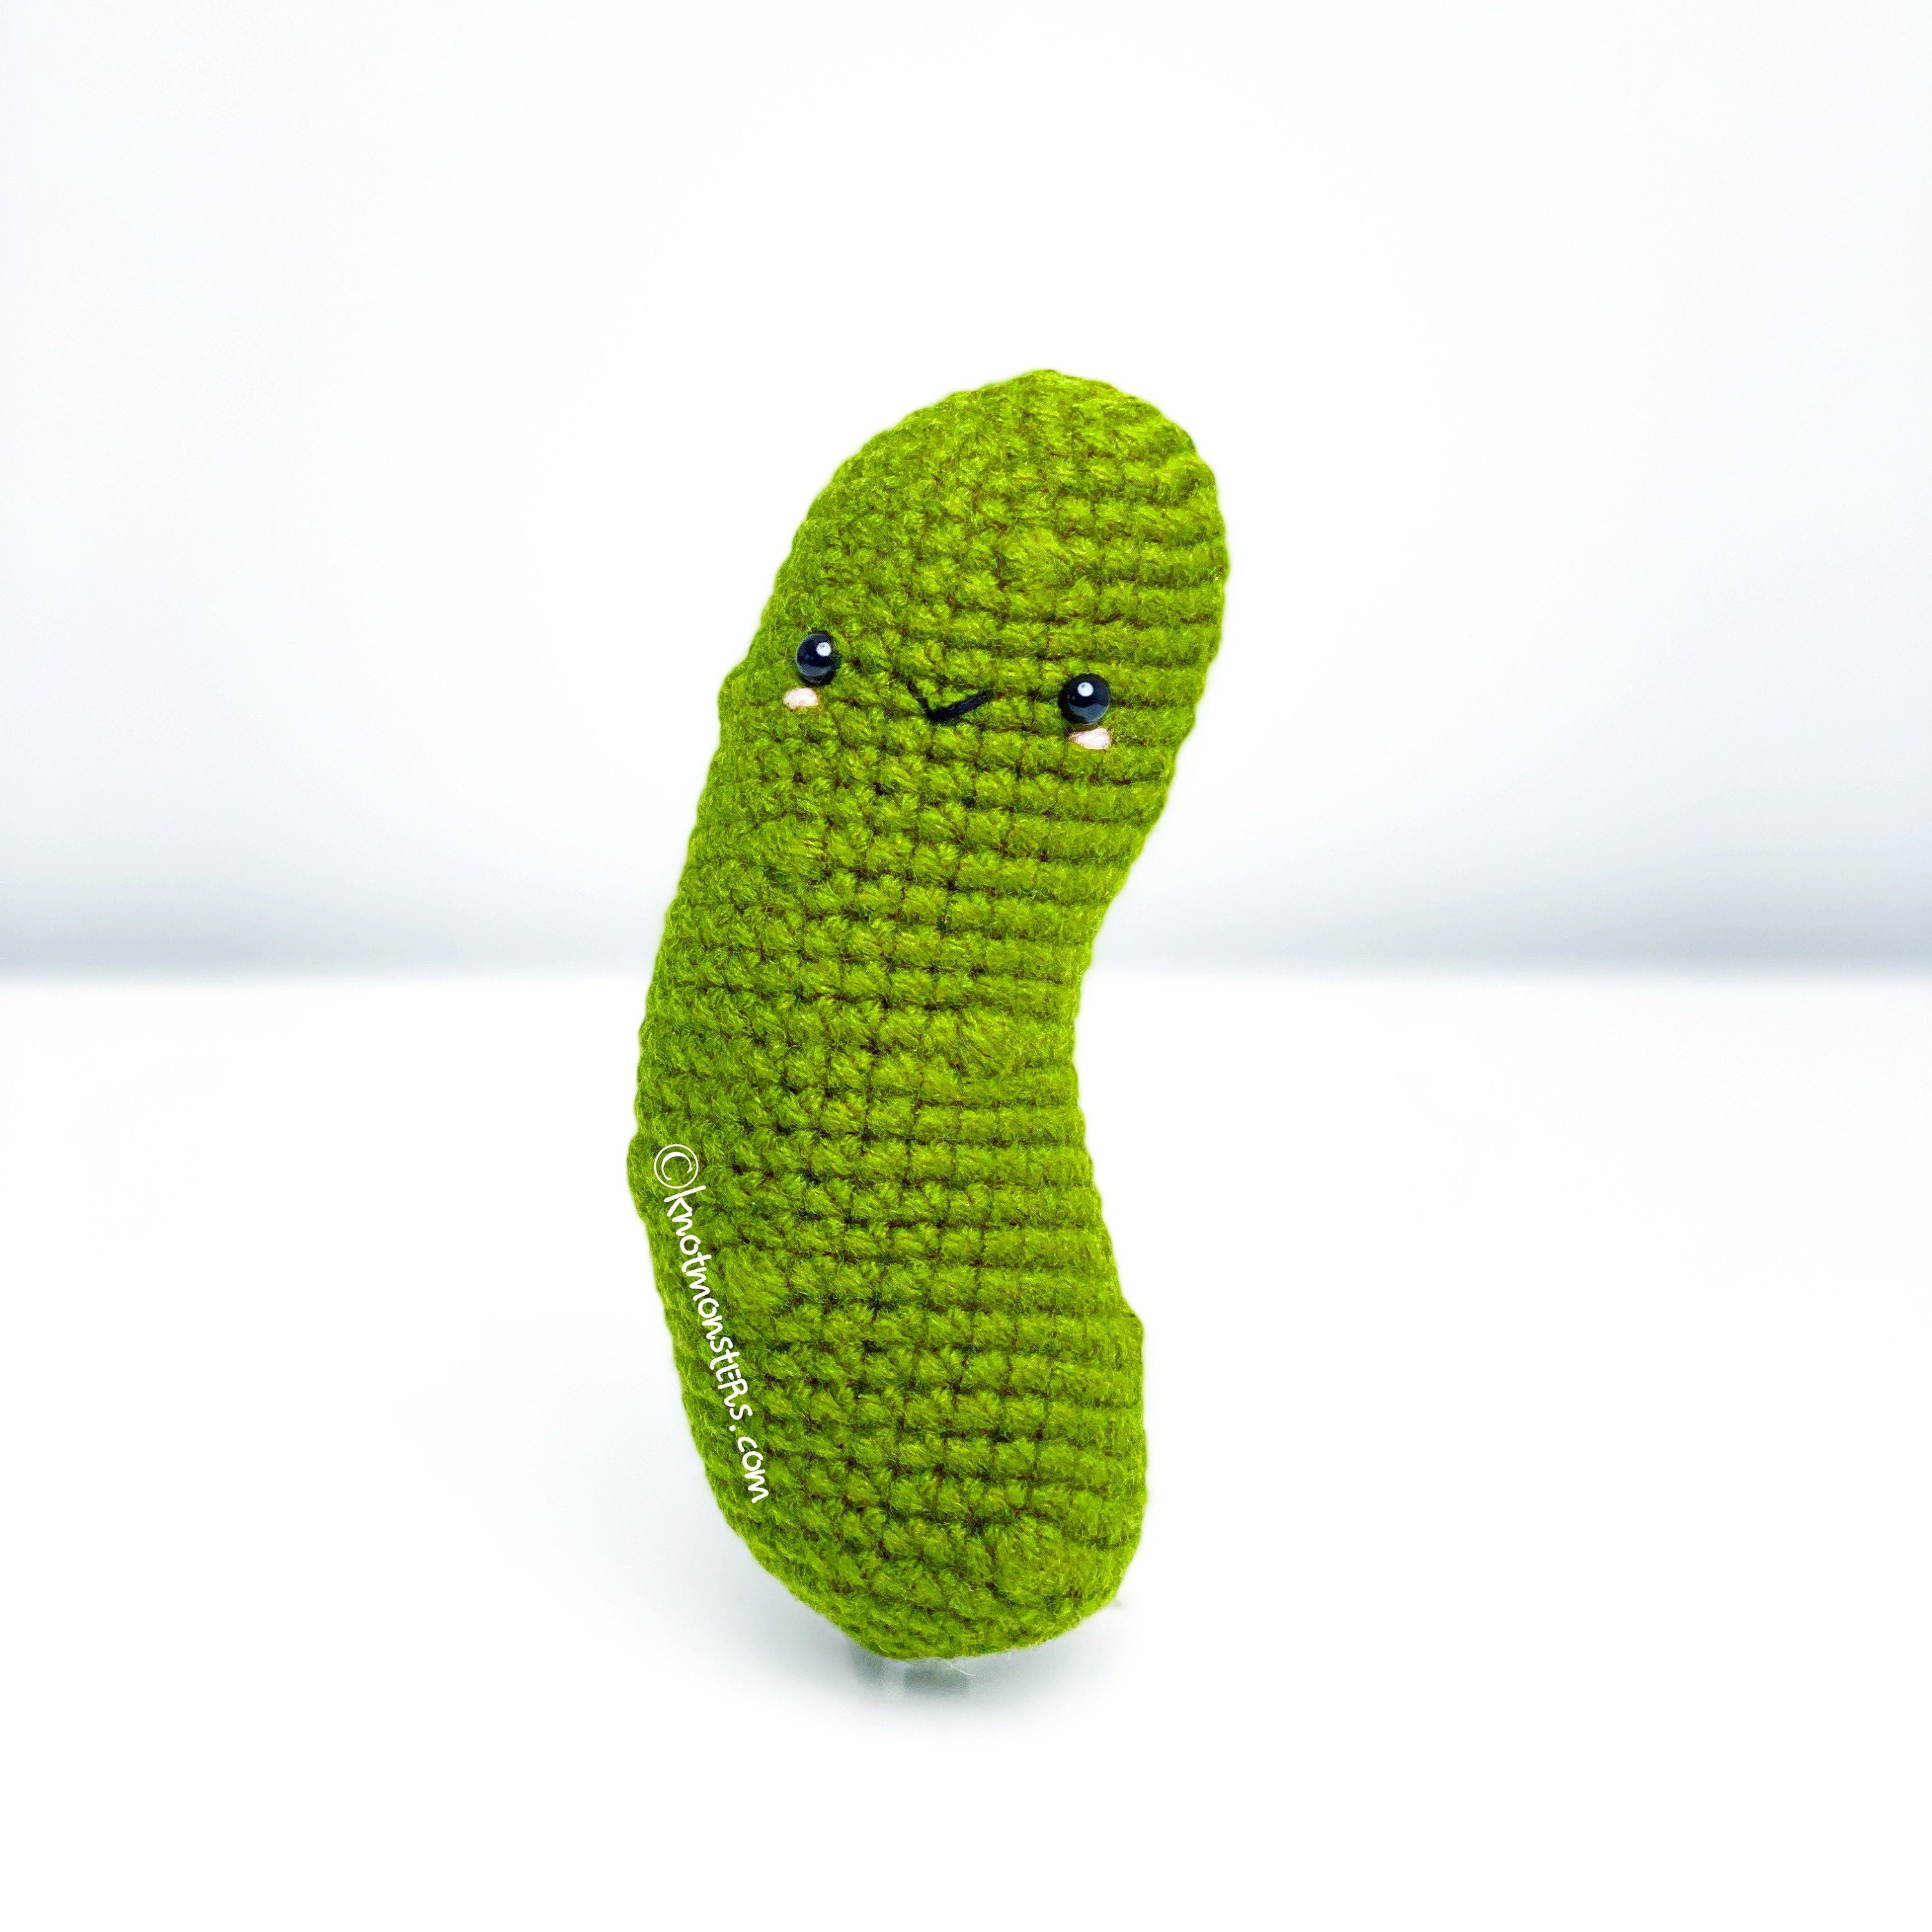 Pickle Cucumber Crochet Pattern! PATTERN ONLY PDF download Amigurumi  Beginner Easy Simple Basic How to Tutorial Kawaii Cute Vegetable Veggie